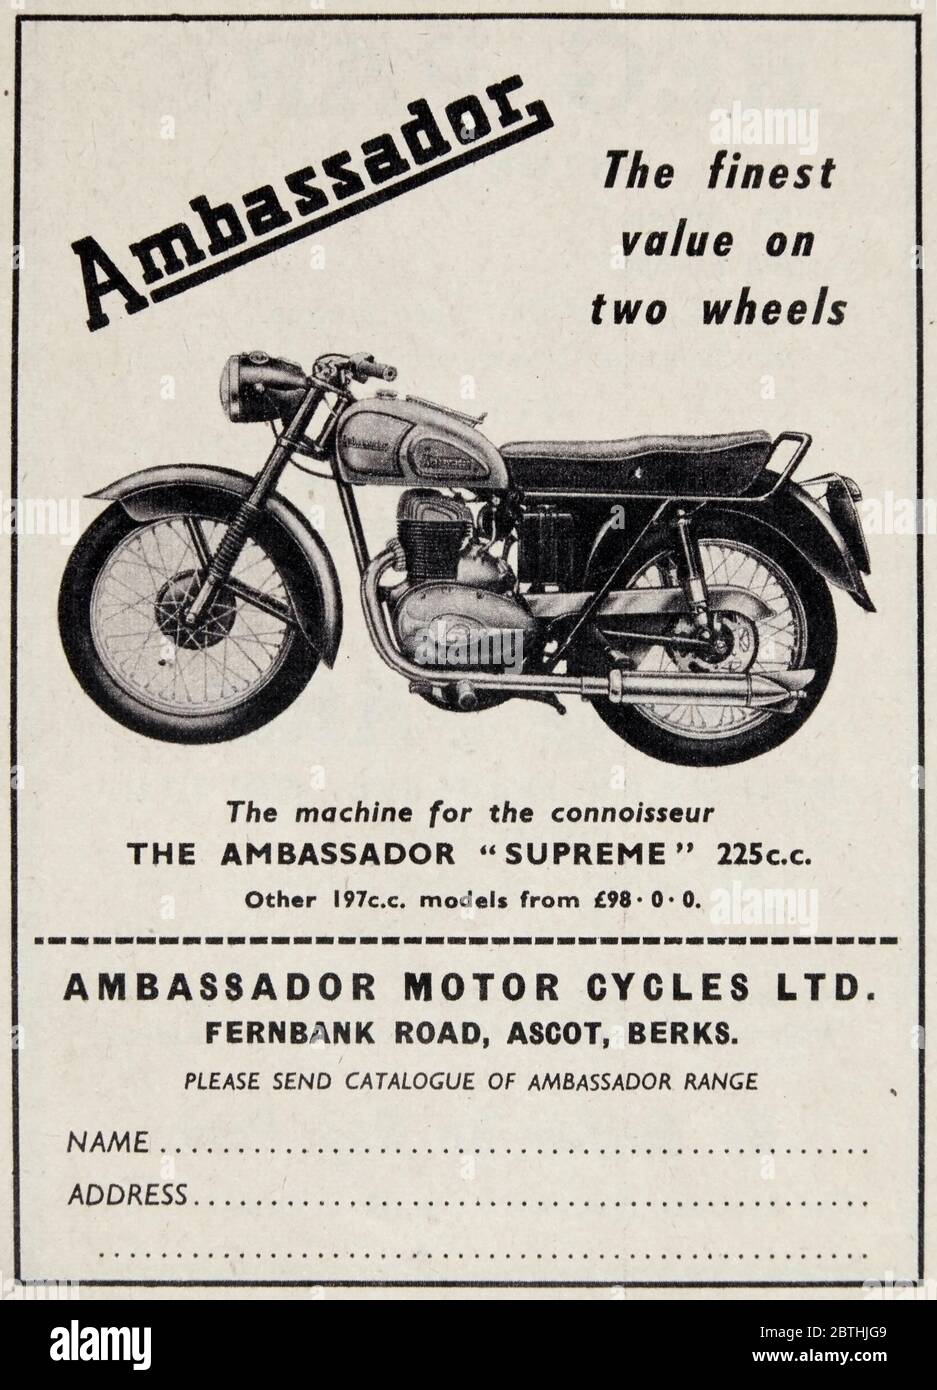 publicite-vintage-pour-les-motos-ambassador-supreme-225cc-2bthjg9.jpg